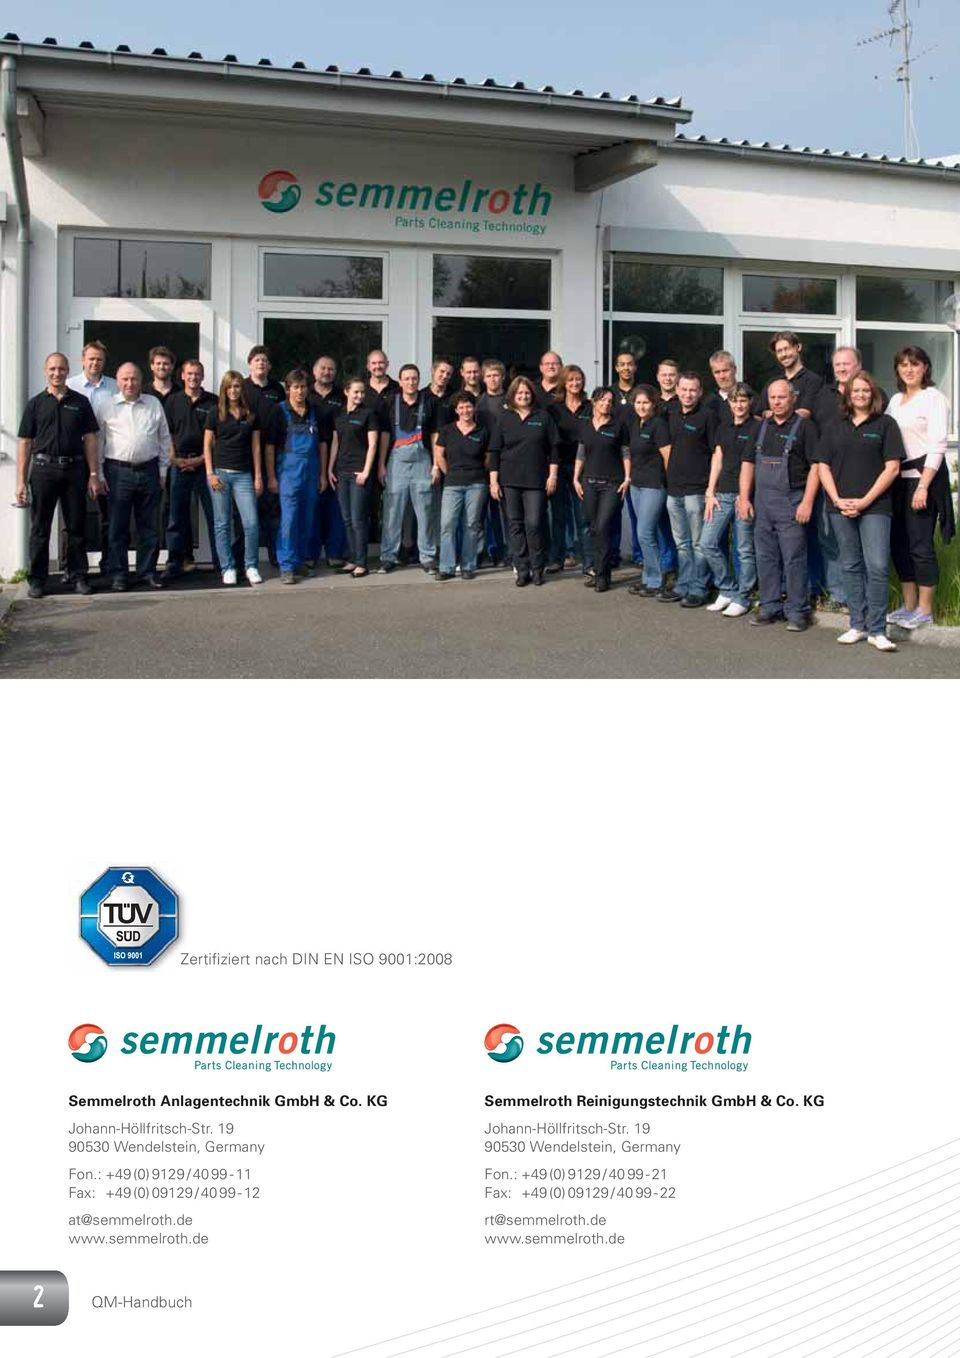 de www.semmelroth.de Semmelroth Reinigungstechnik GmbH & Co. KG Johann-Höllfritsch-Str.